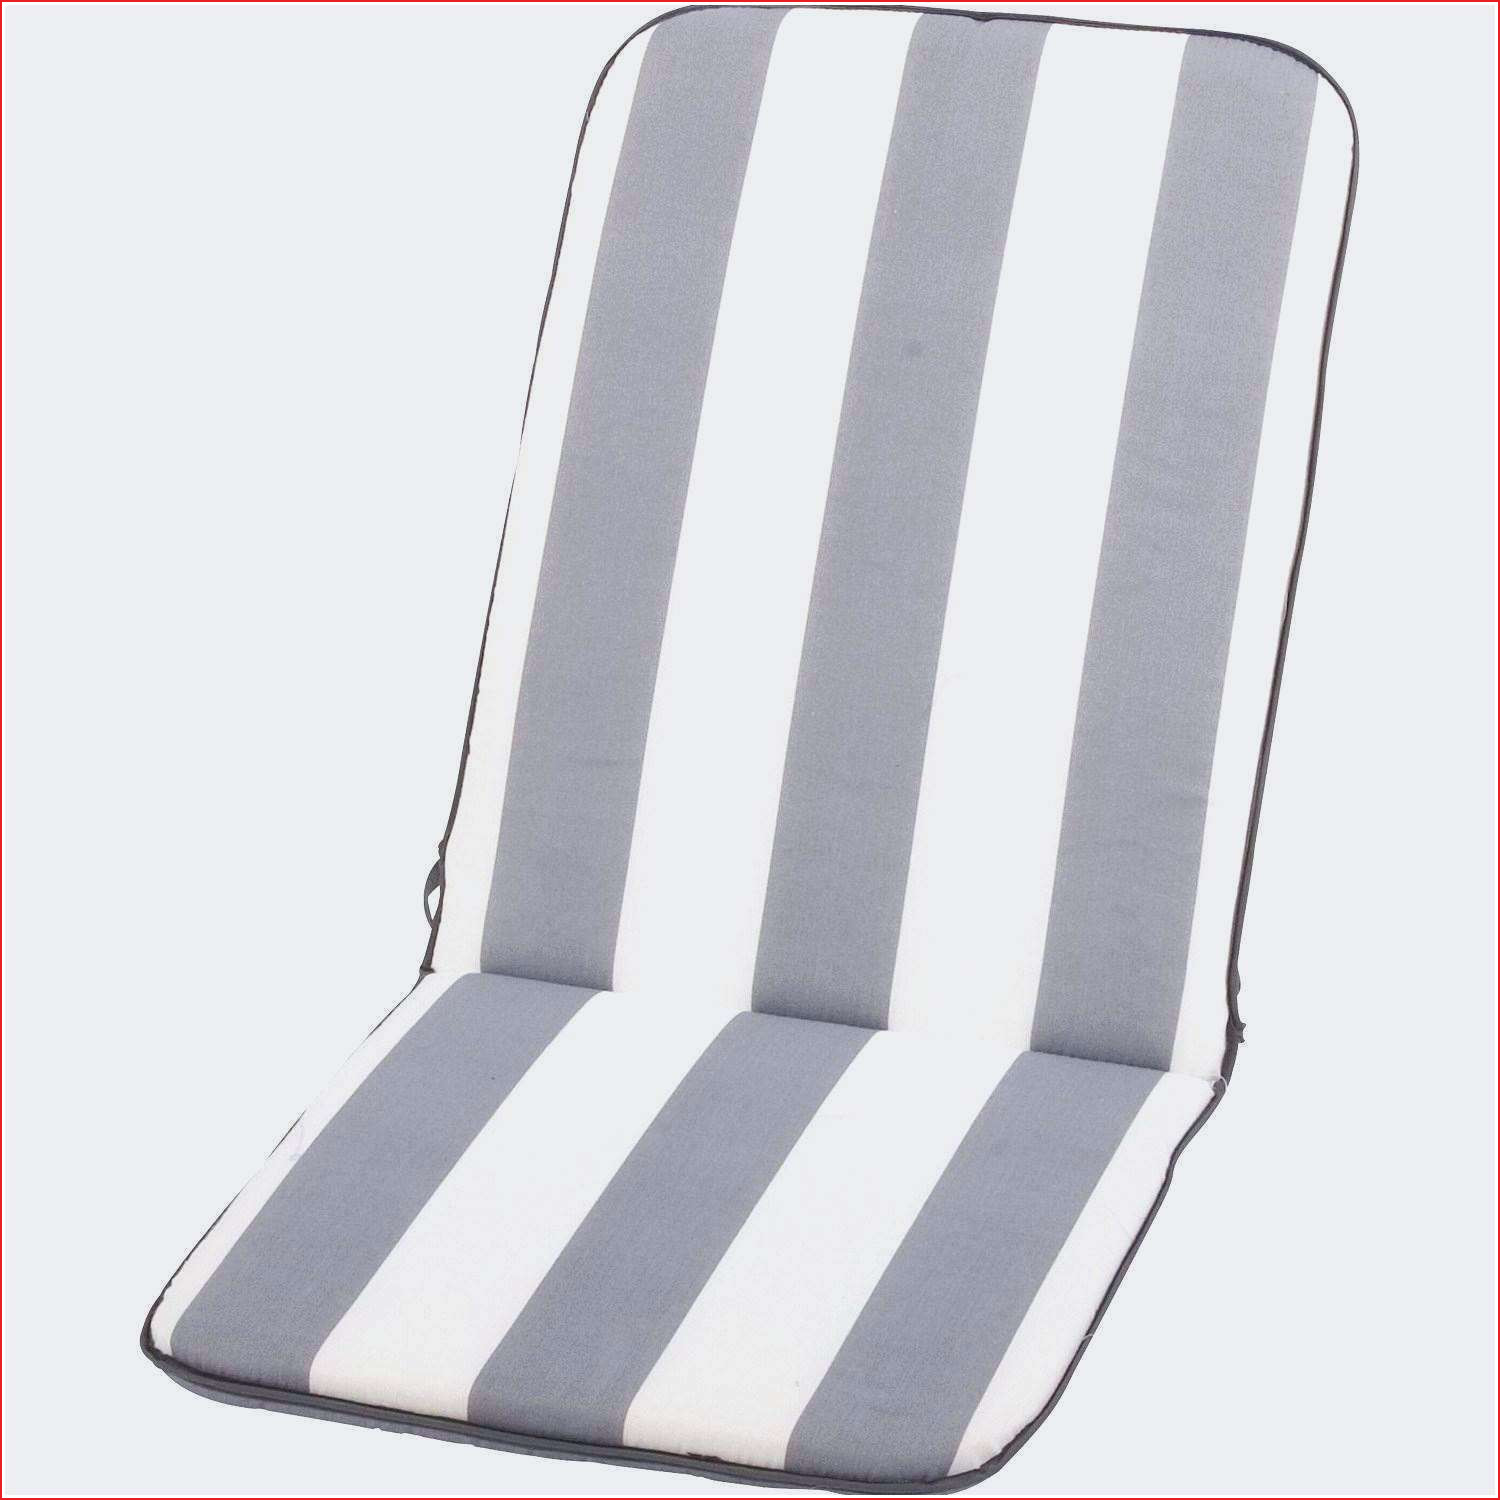 mousse pour coussin de chaise matelas pour transat transat chaise longue jardin chaise of mousse pour coussin de chaise